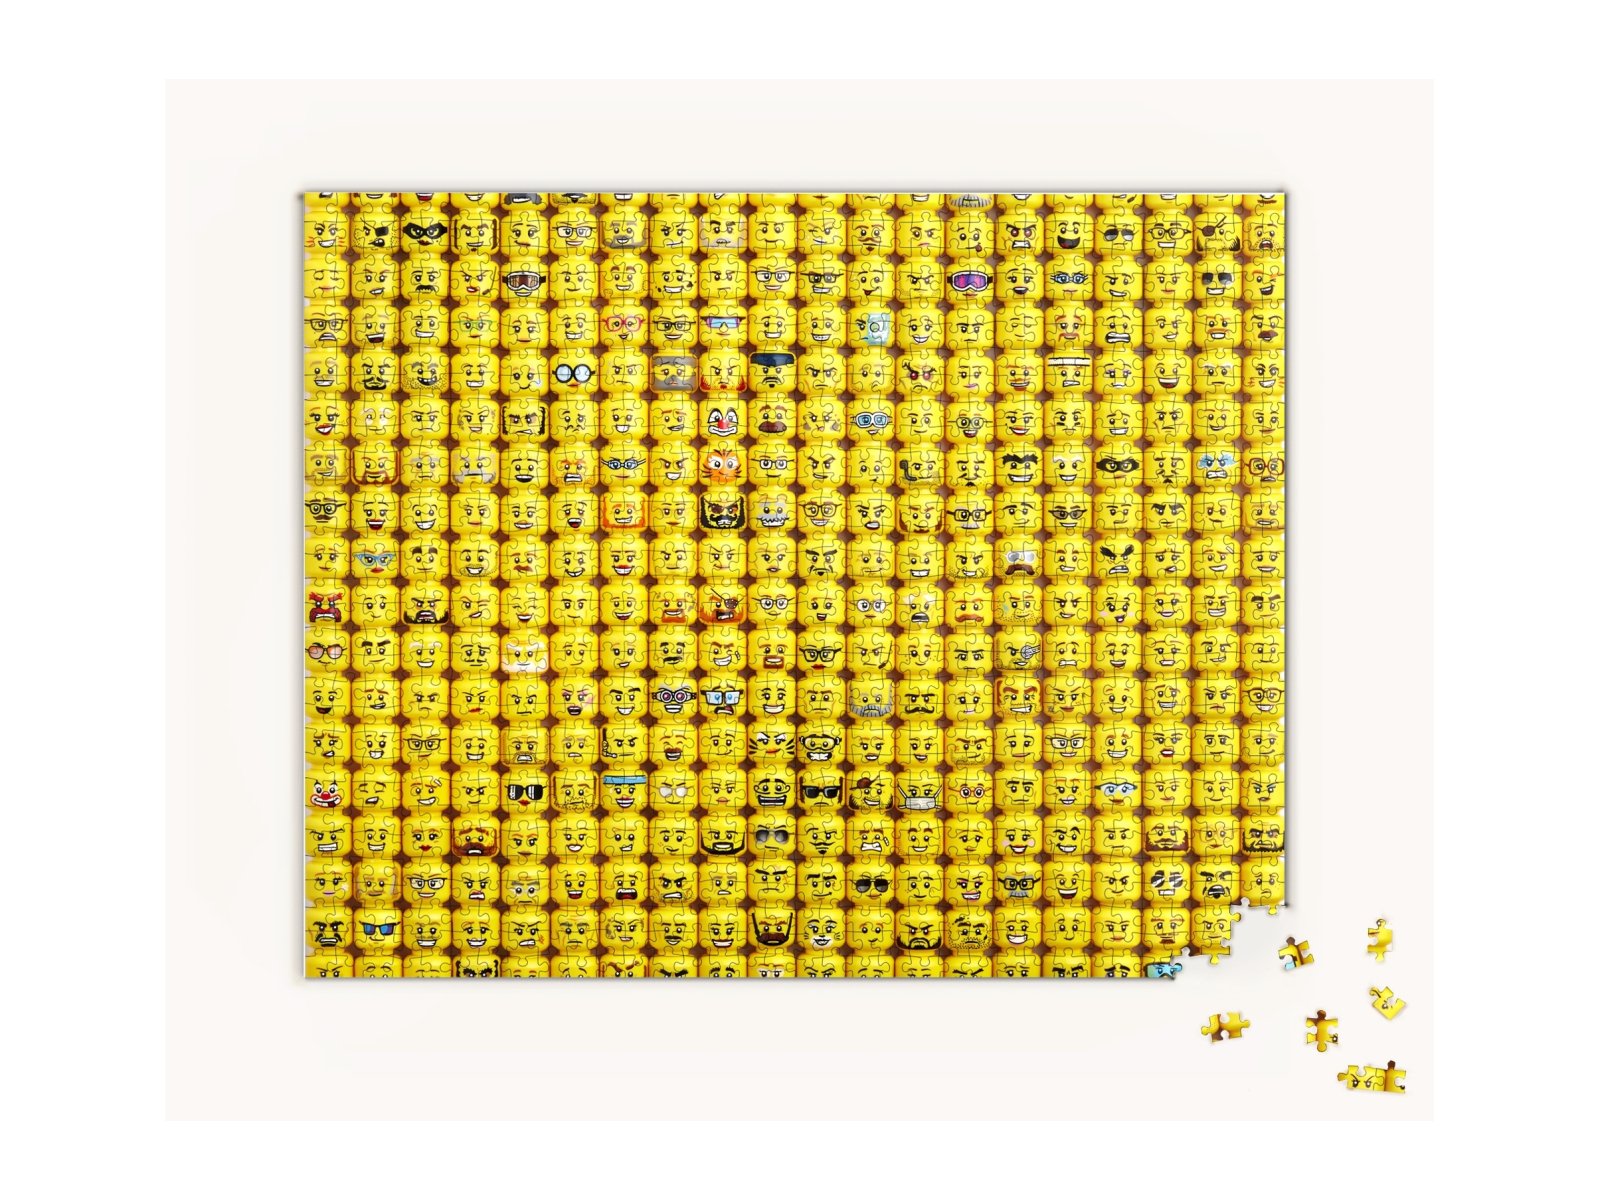 LEGO 5007070 Puzzle z twarzami minifigurek — 1000 elementów